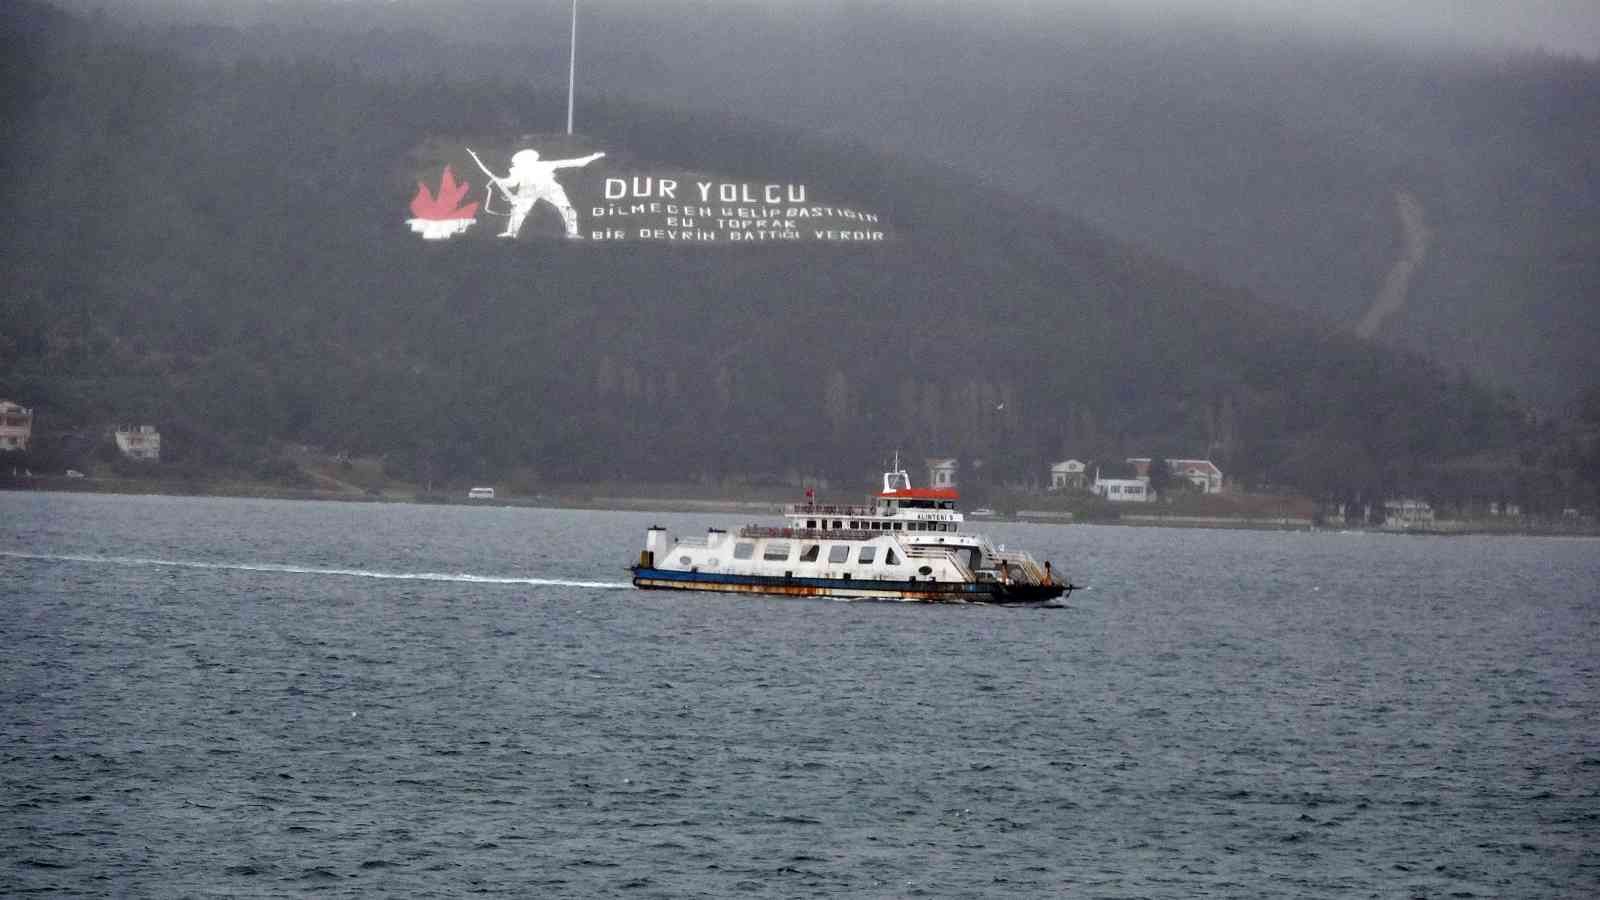 Çanakkale’de, Gökçeada ve Bozcaada’ya feribot seferleri yapılamıyor #canakkale